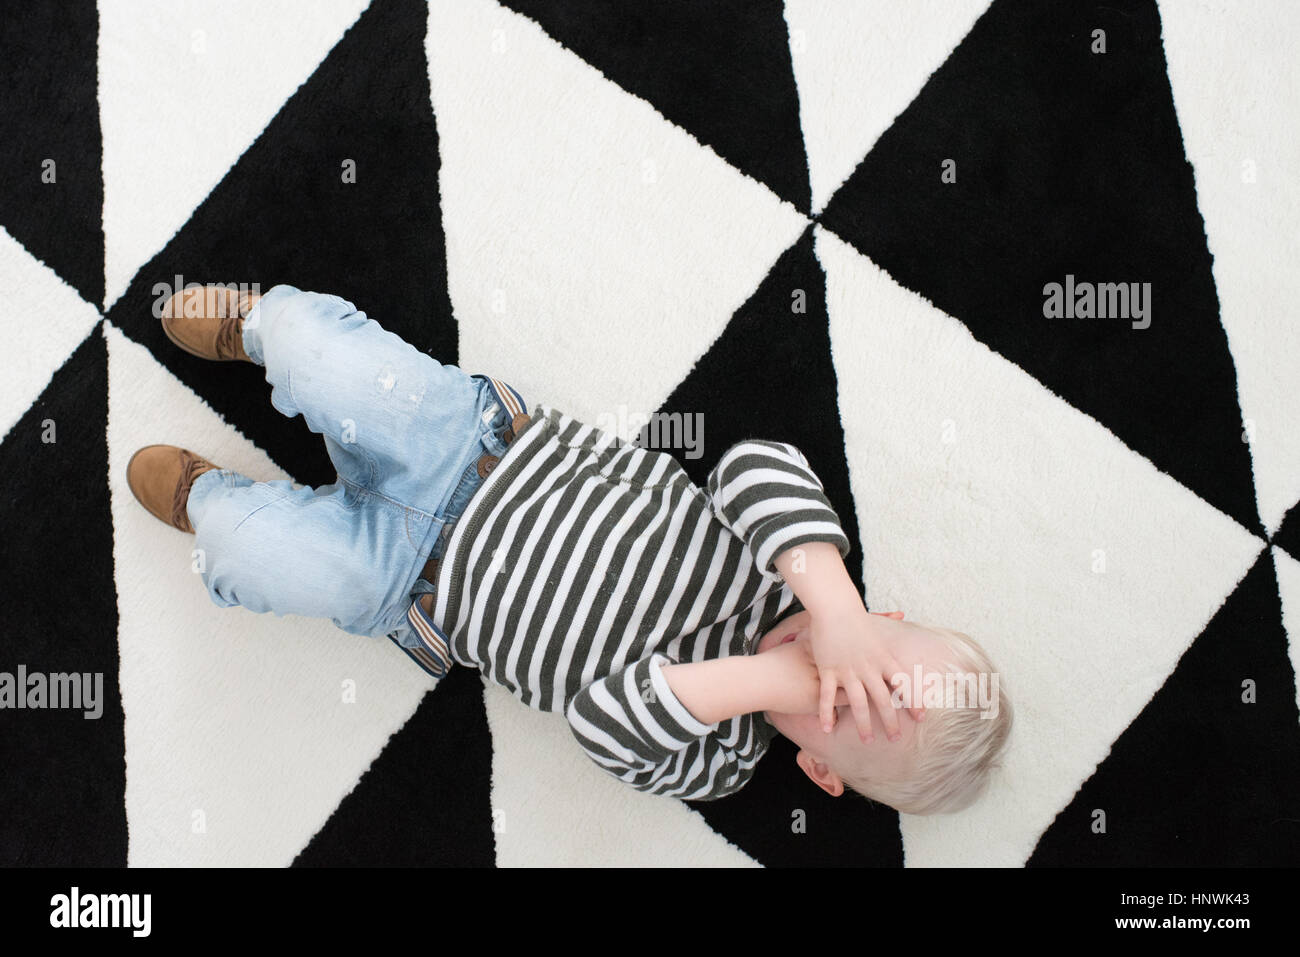 Junge auf Boden liegend, für Augen, erhöht, Ansicht Stockfoto